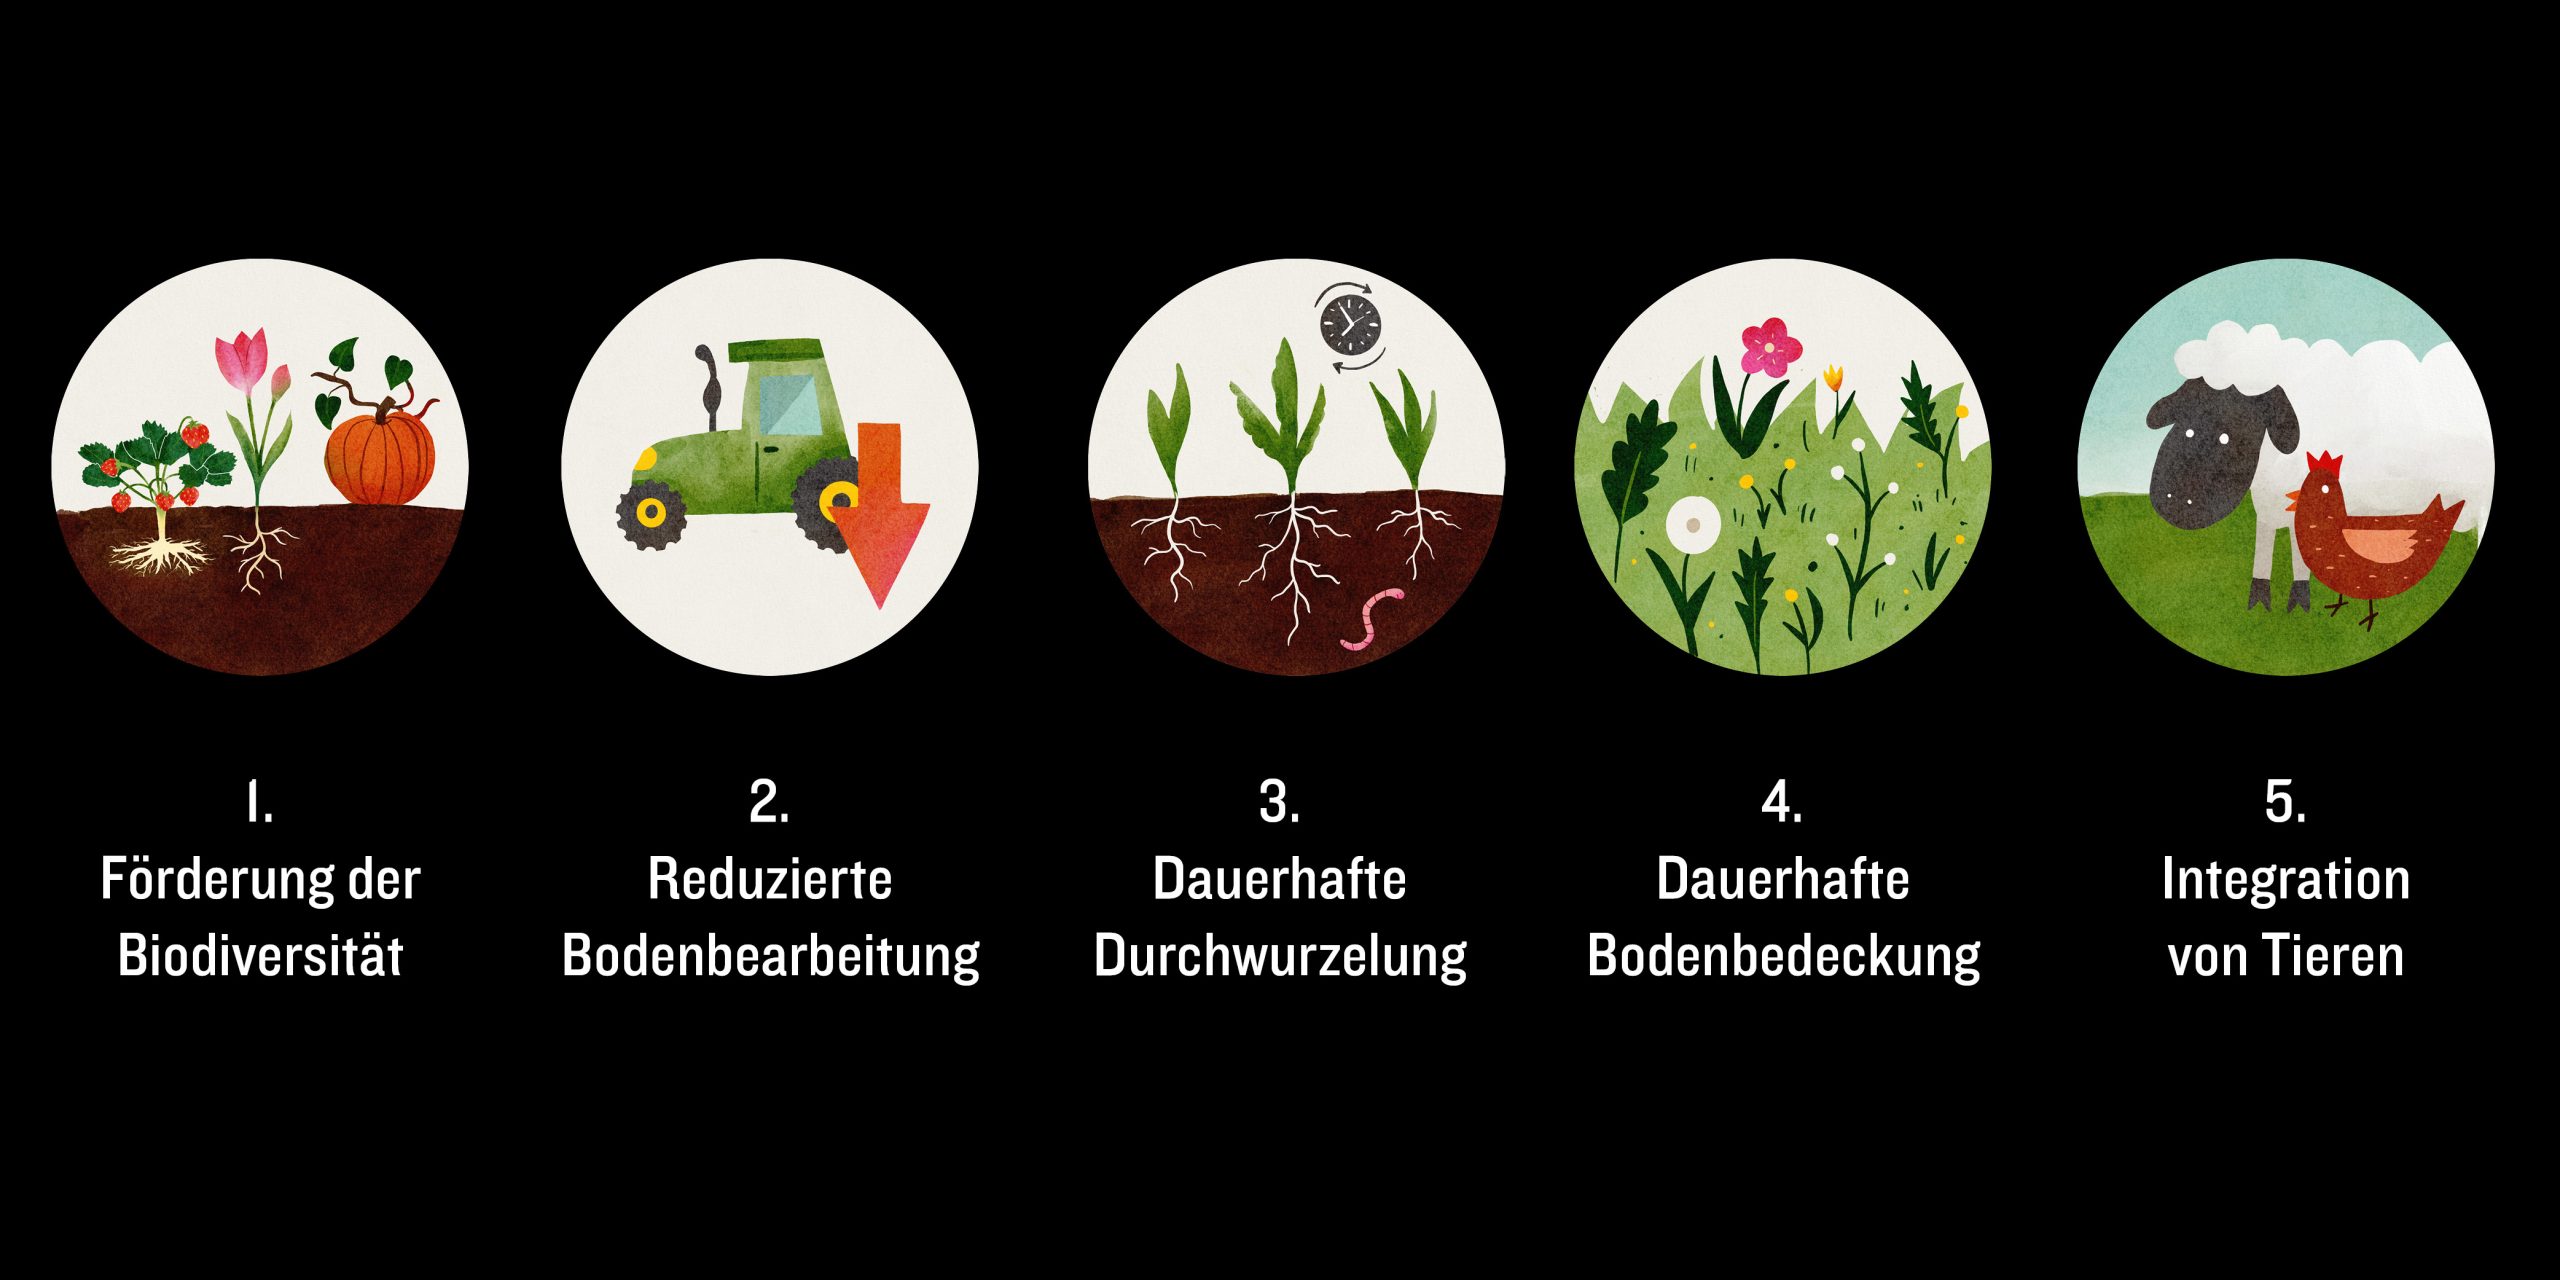 Die fünf Prinzipien regenerativer Landwirtschaft.